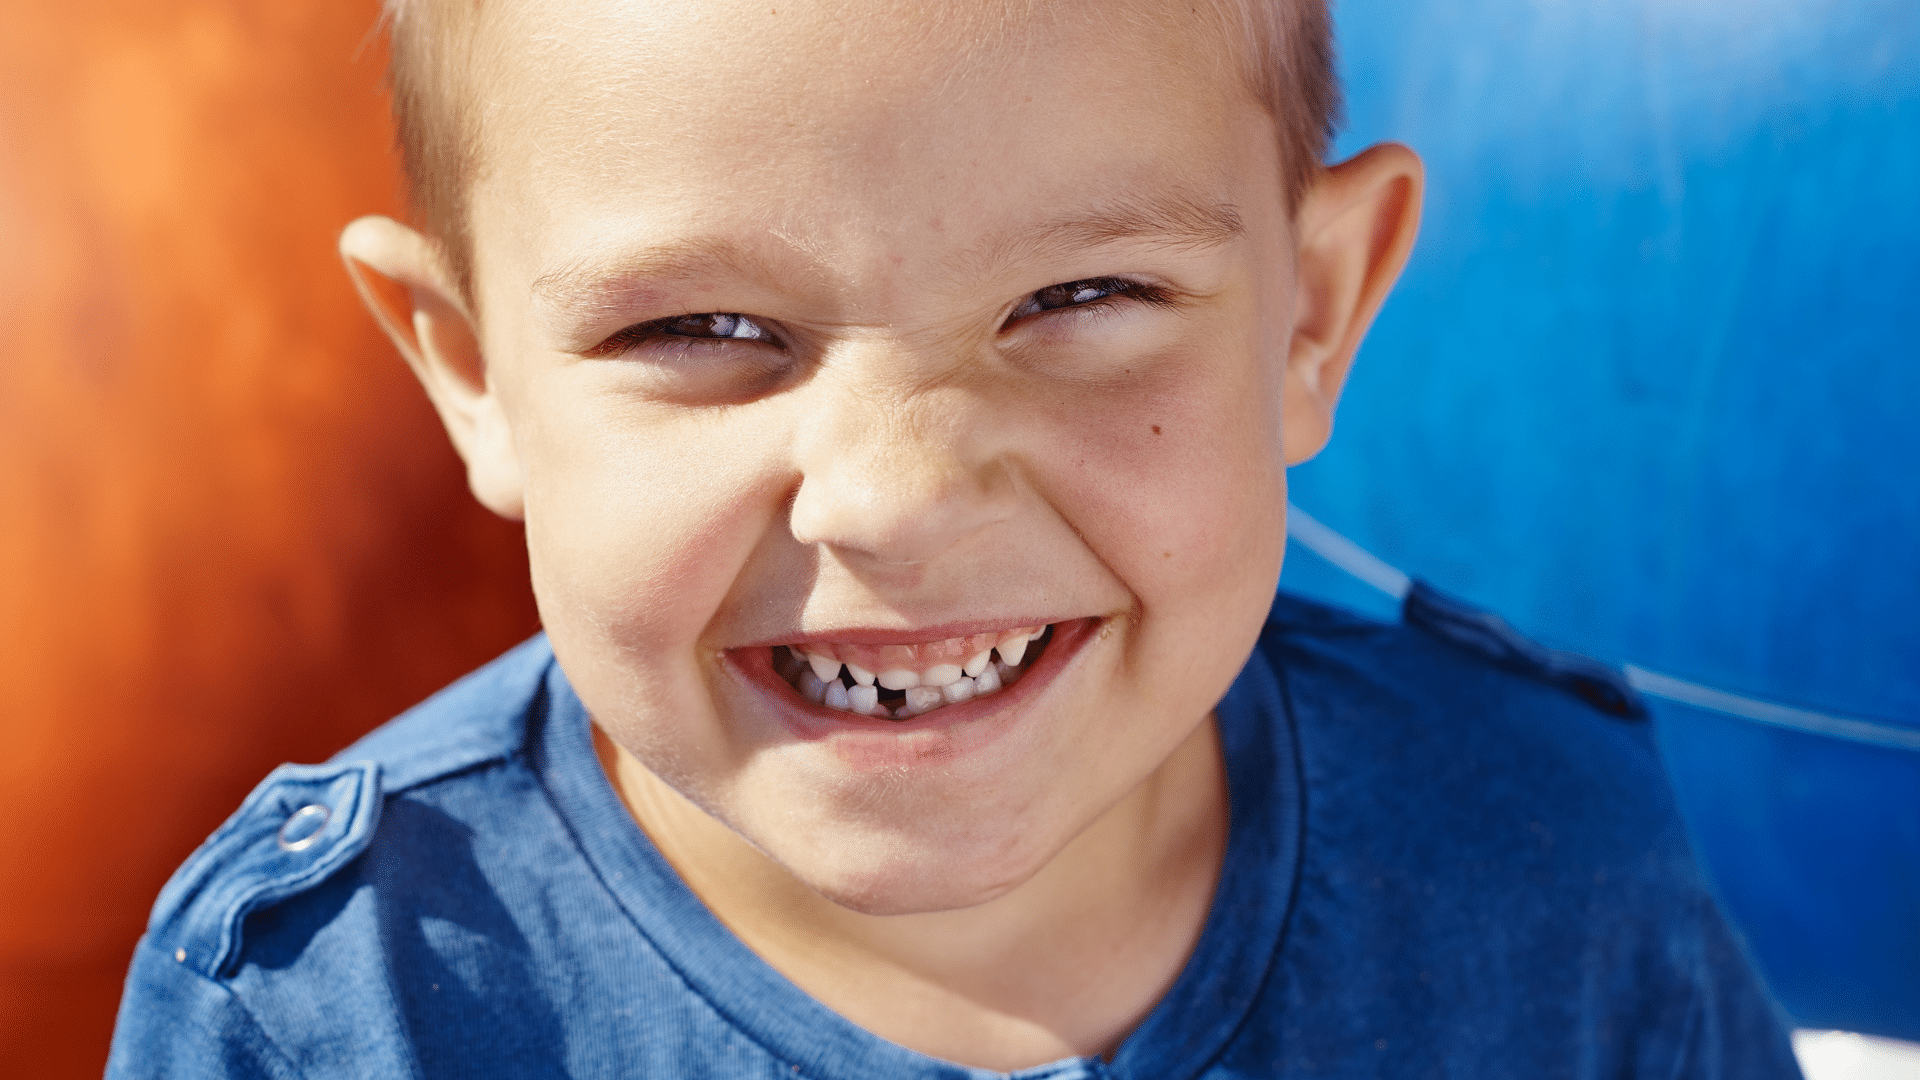 Quelles solutions possibles pour traiter une MIH dentaire chez un enfant ?